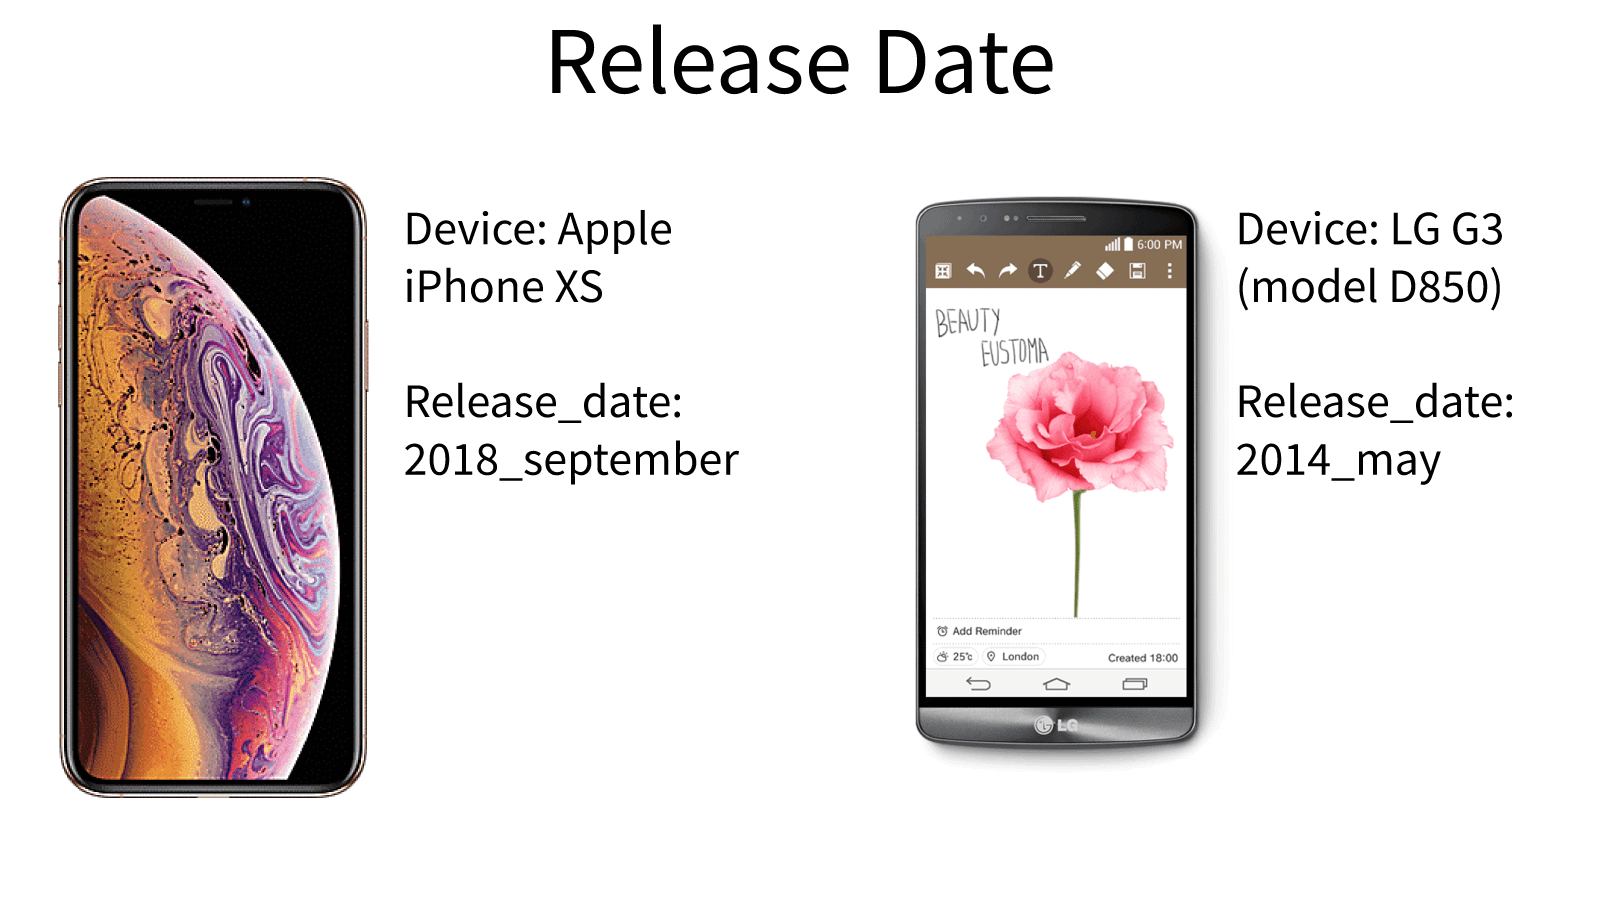 release date of smartphones